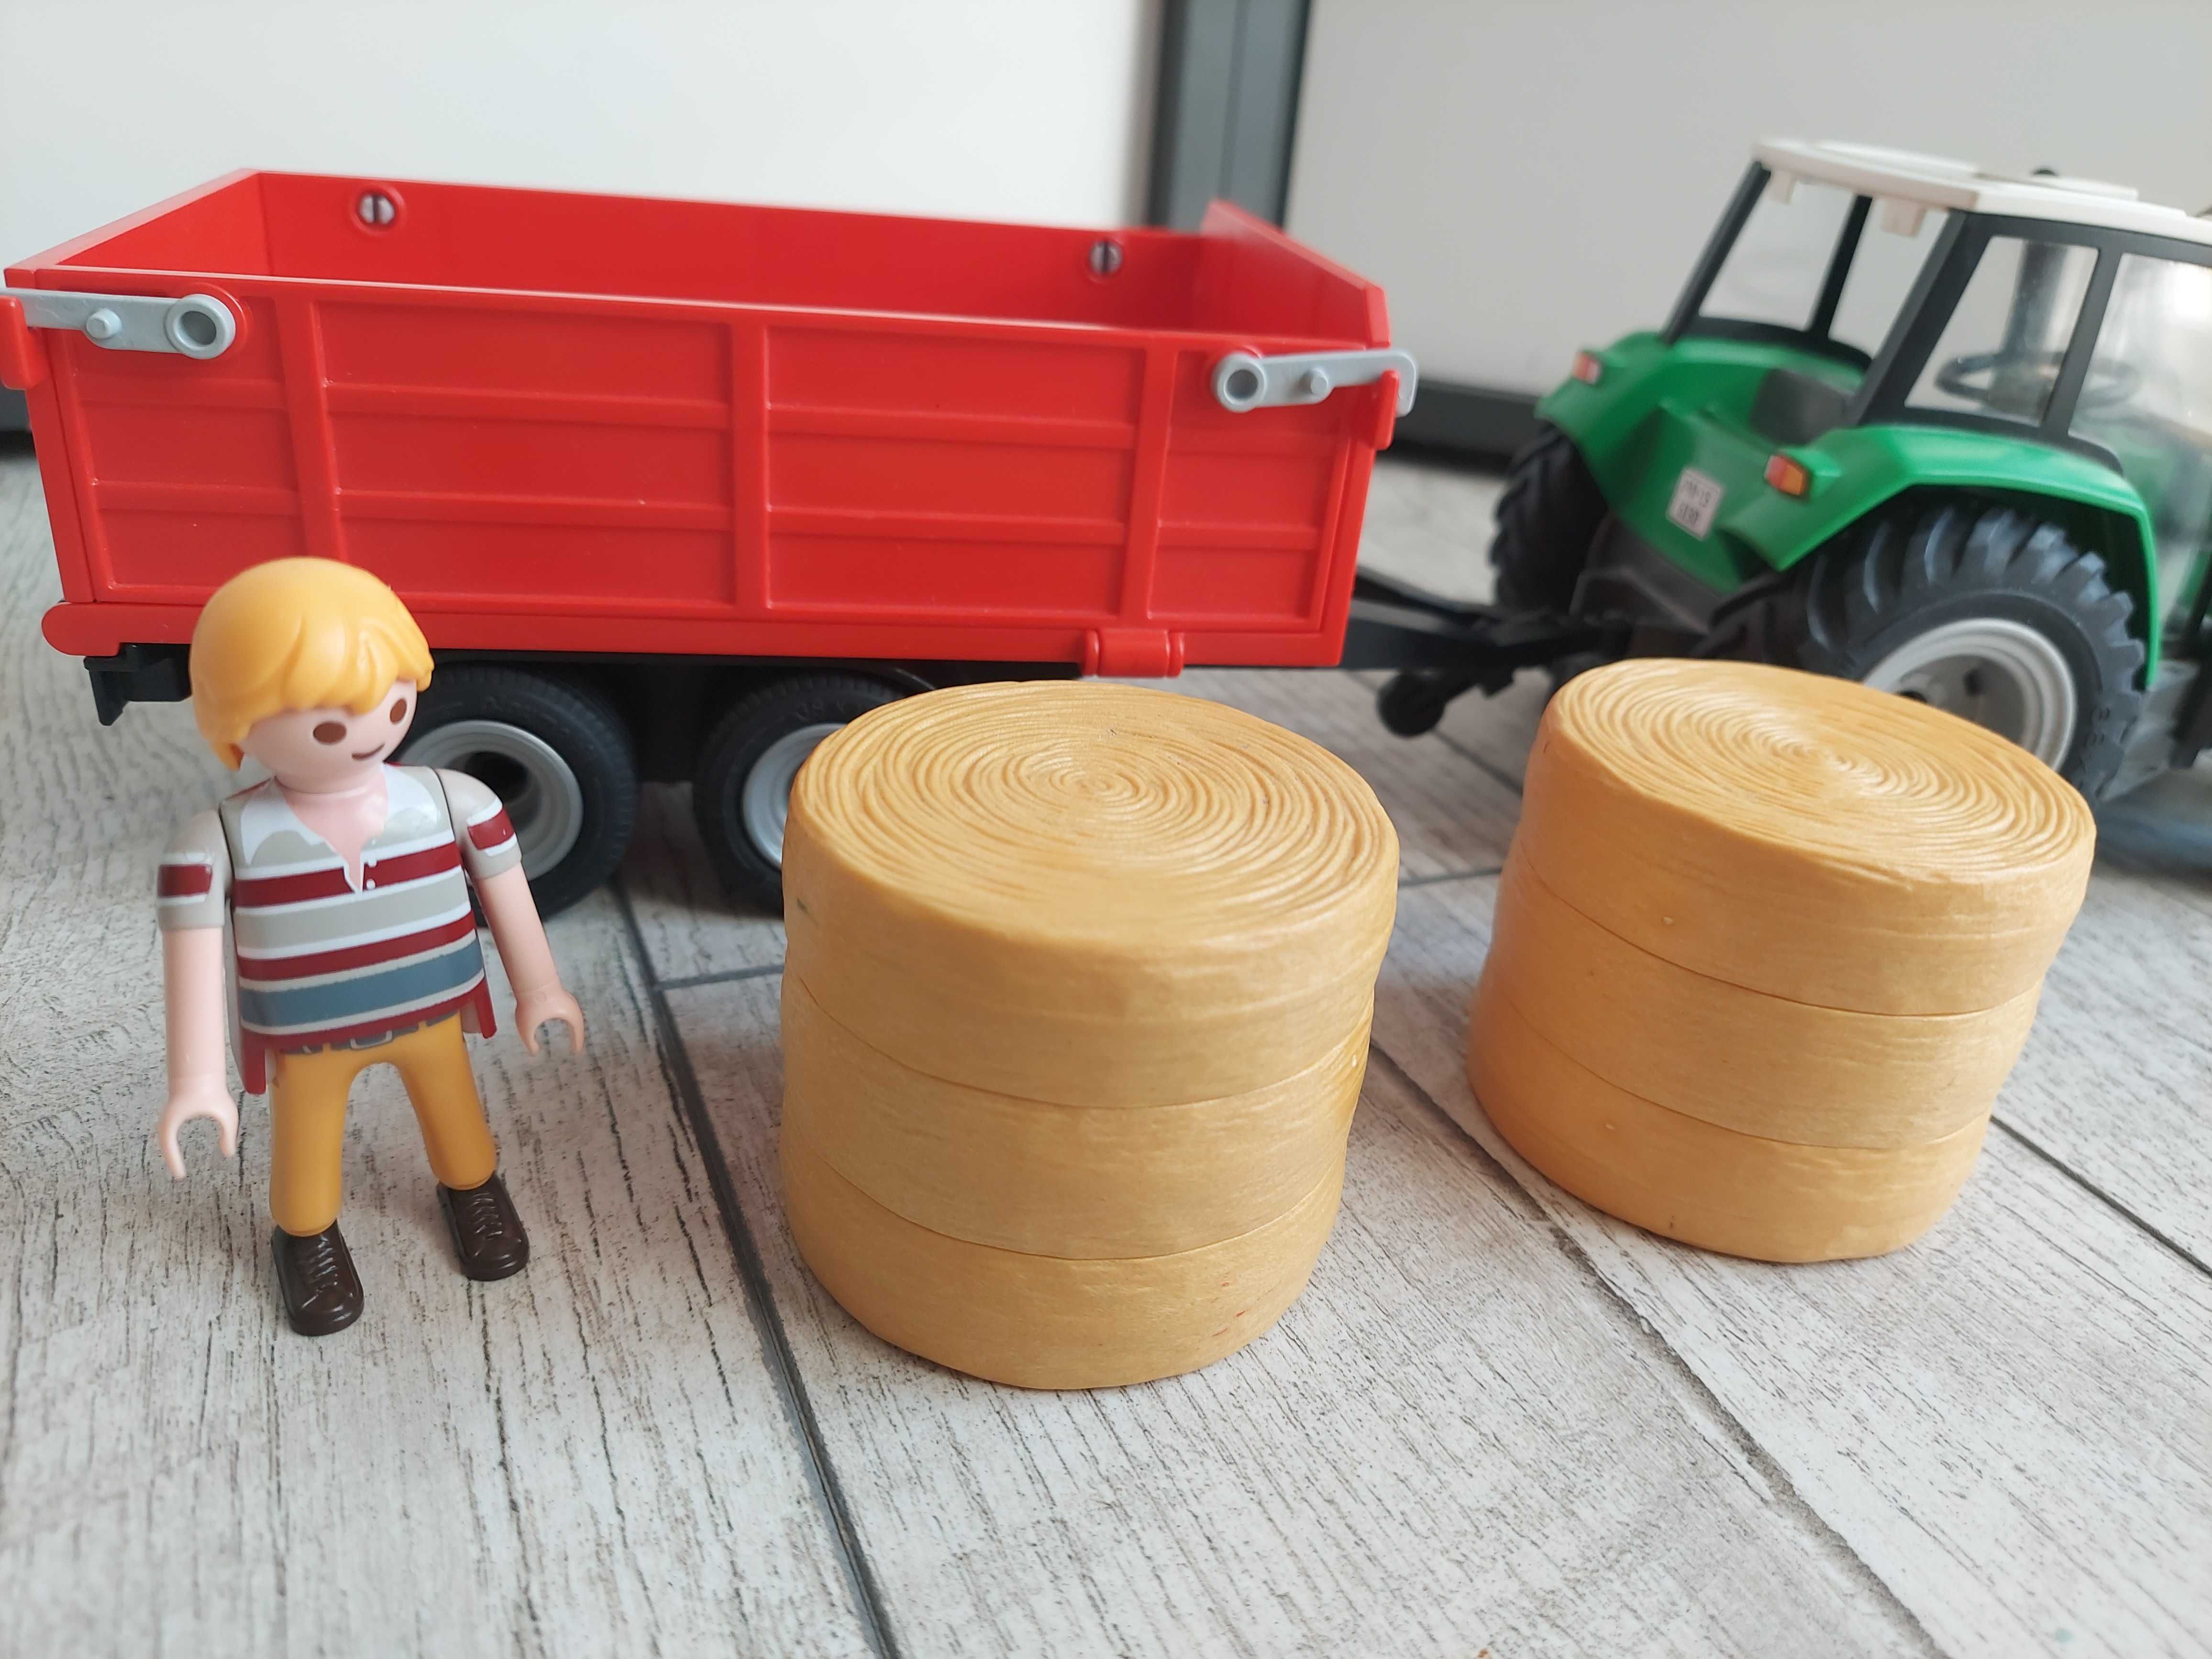 Playmobil 6130 duży traktor z przyczepą siano farma gospodarstwo